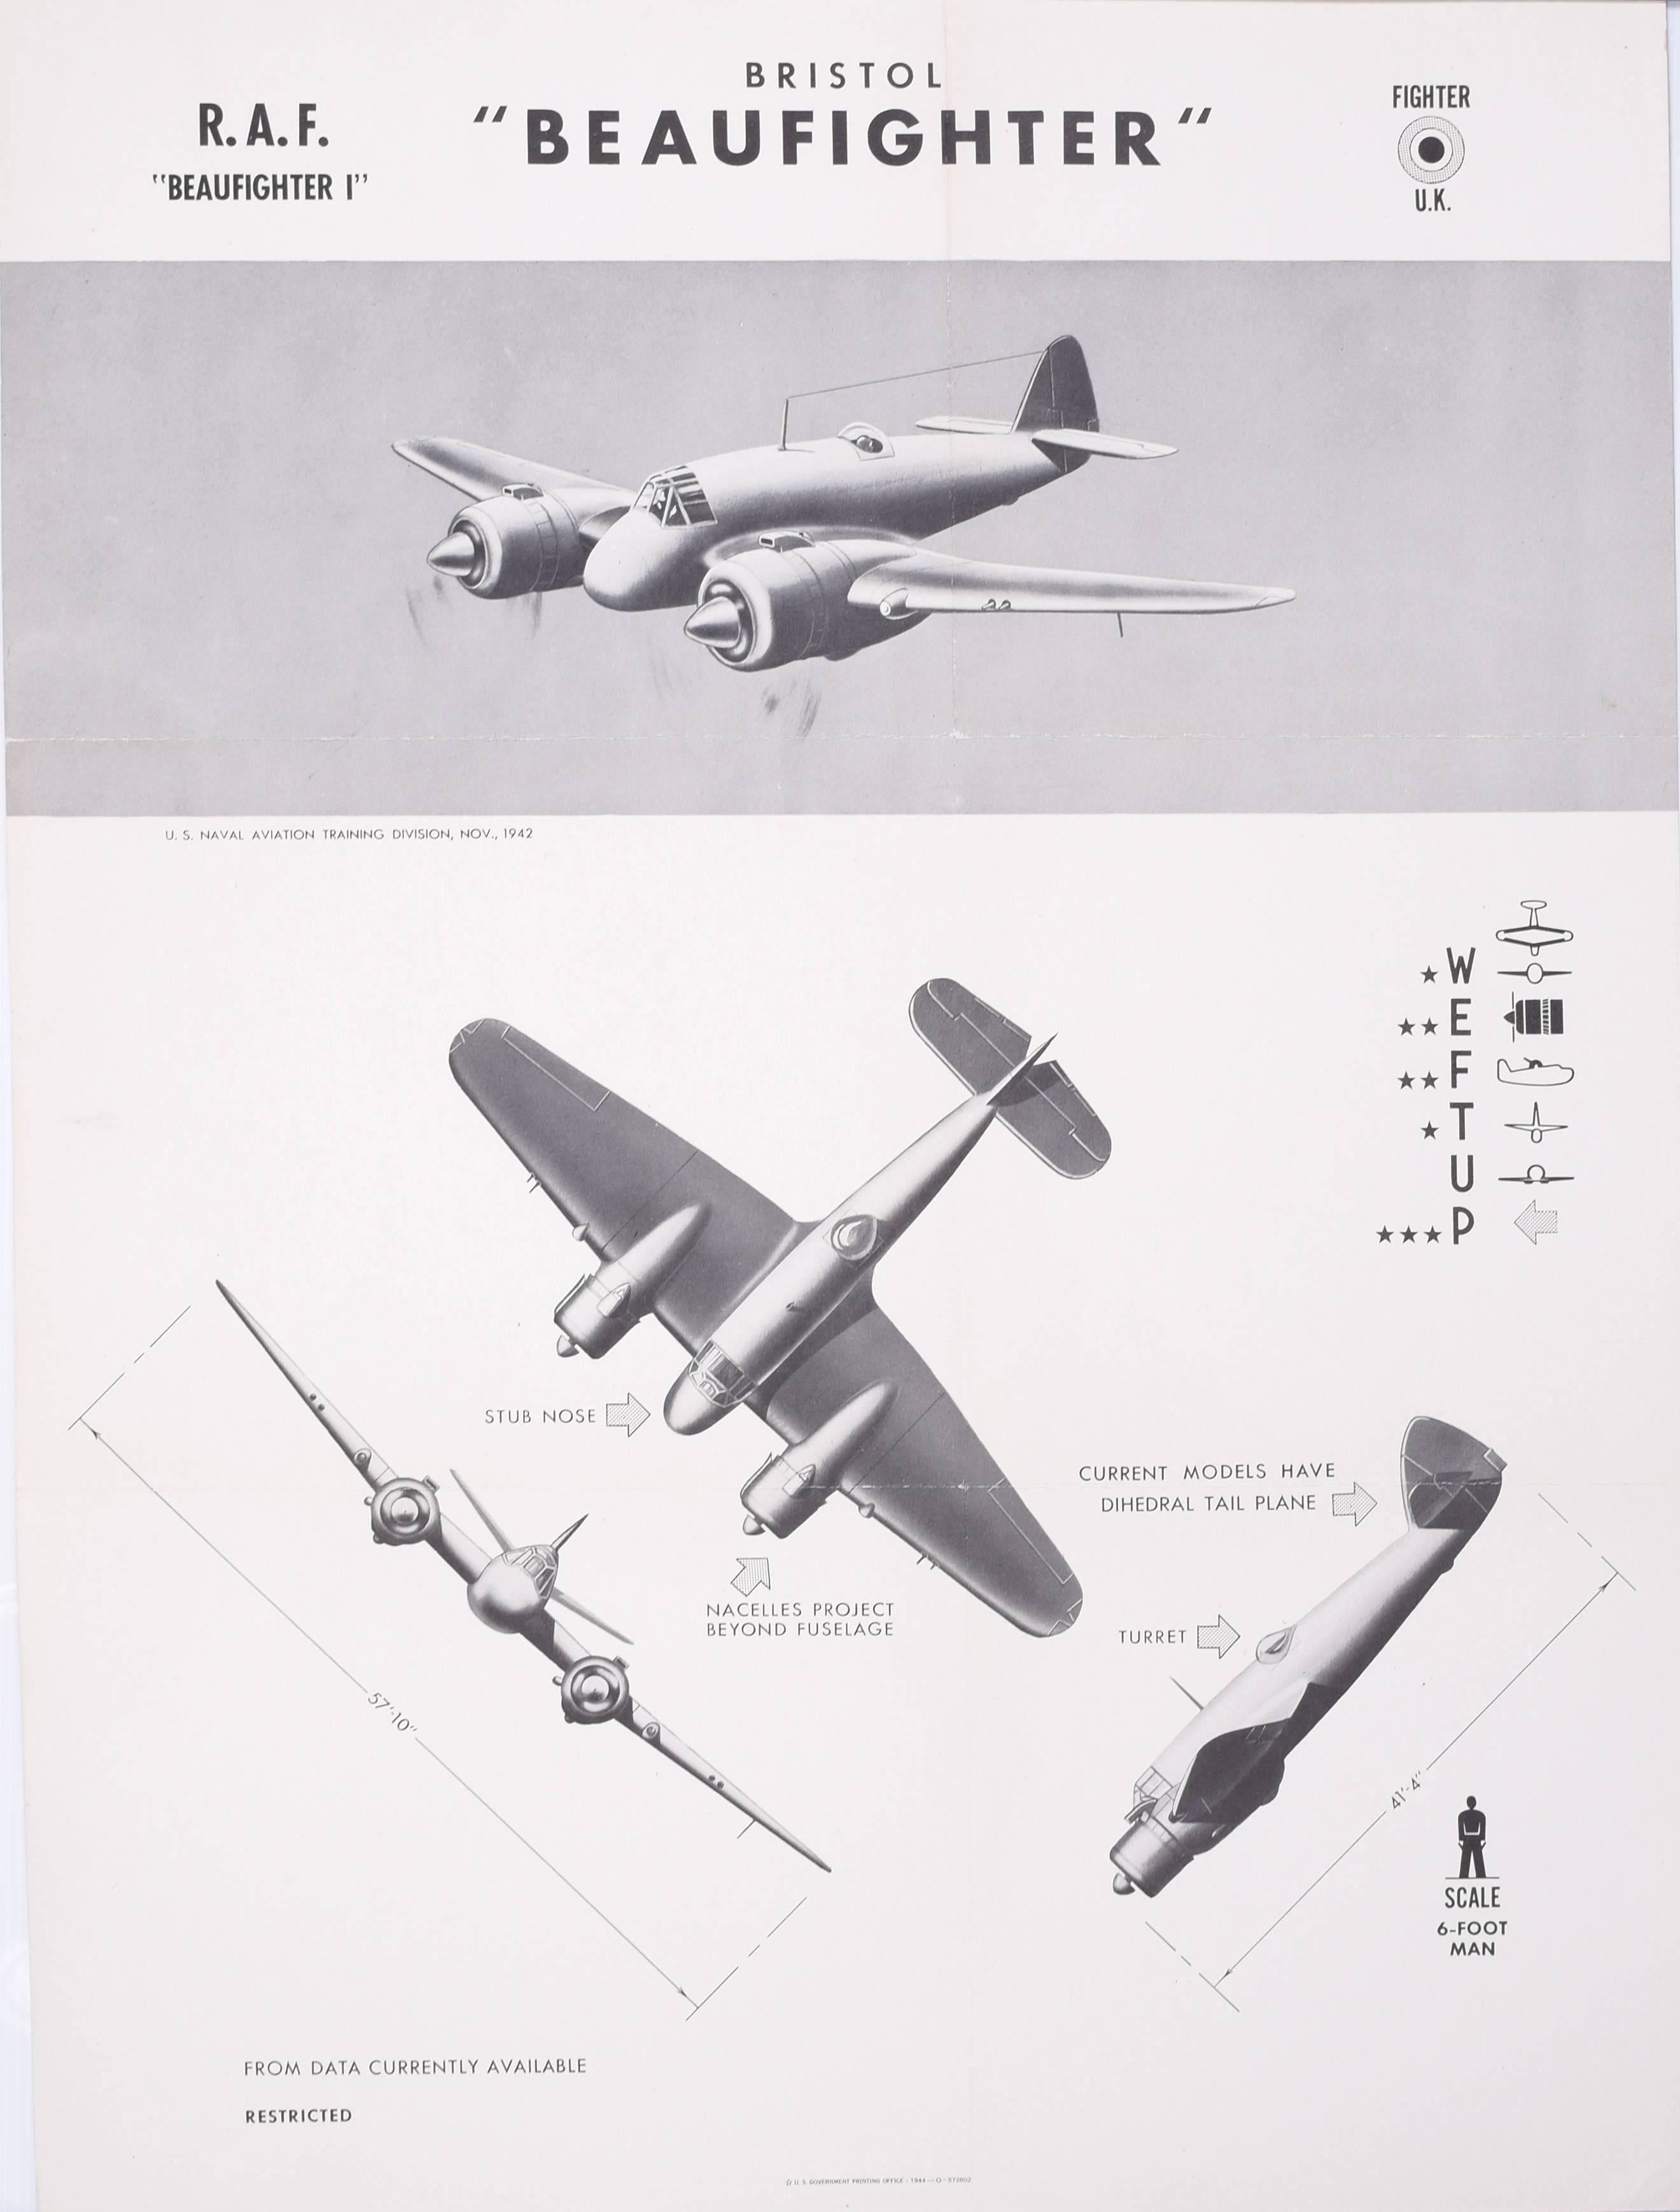 Affiche de reconnaissance d'avion Beaufighter de la Royal Air Force Bristol datant de 1942 et datant de la Première Guerre mondiale 